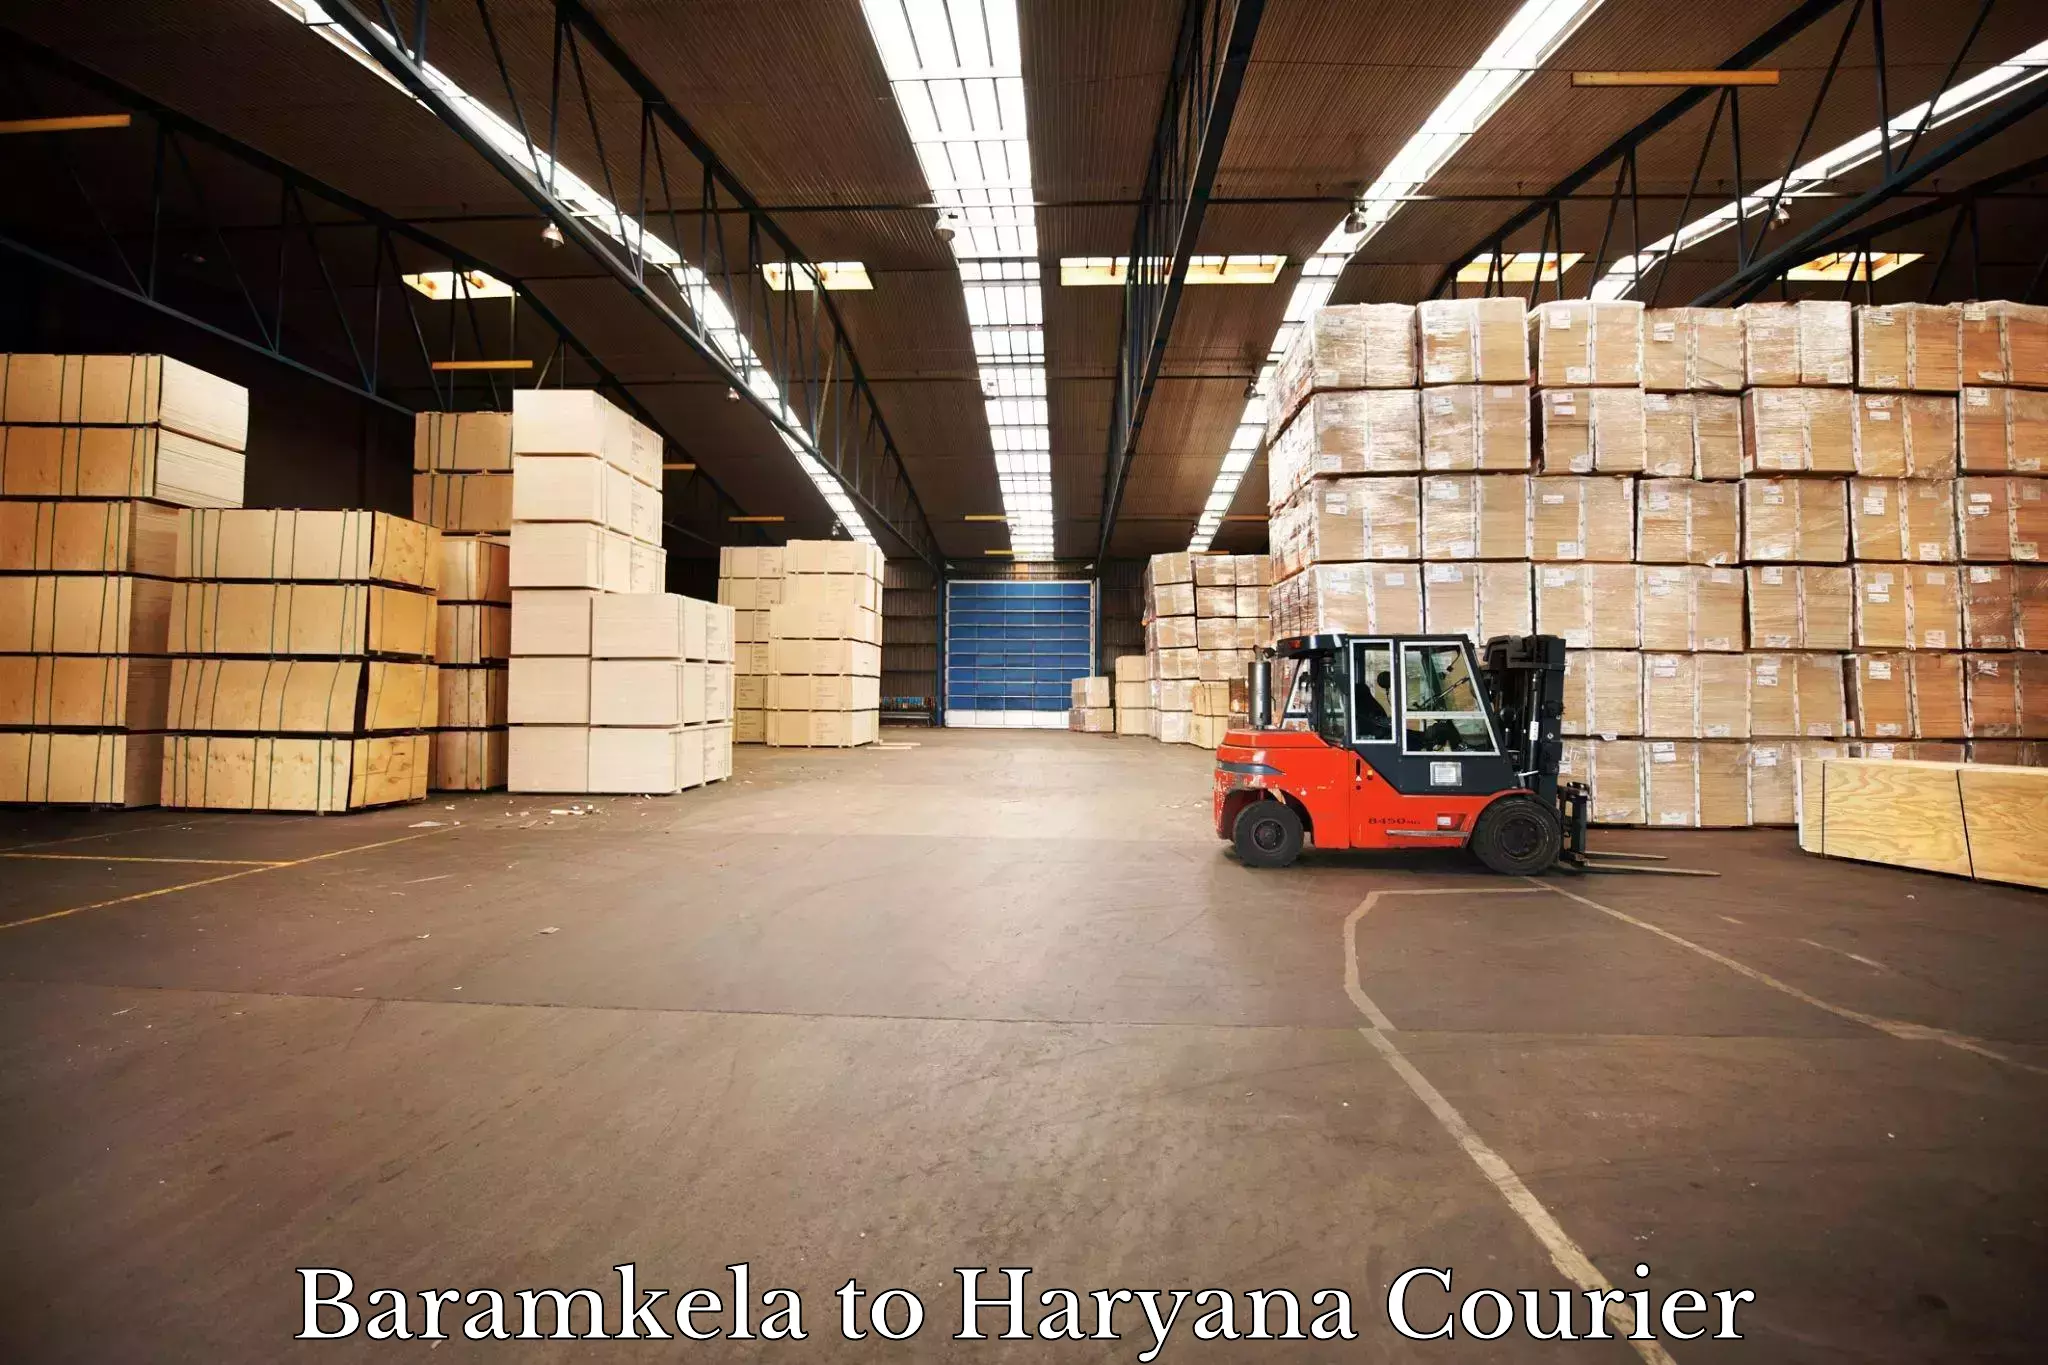 Express delivery capabilities Baramkela to IIIT Sonepat